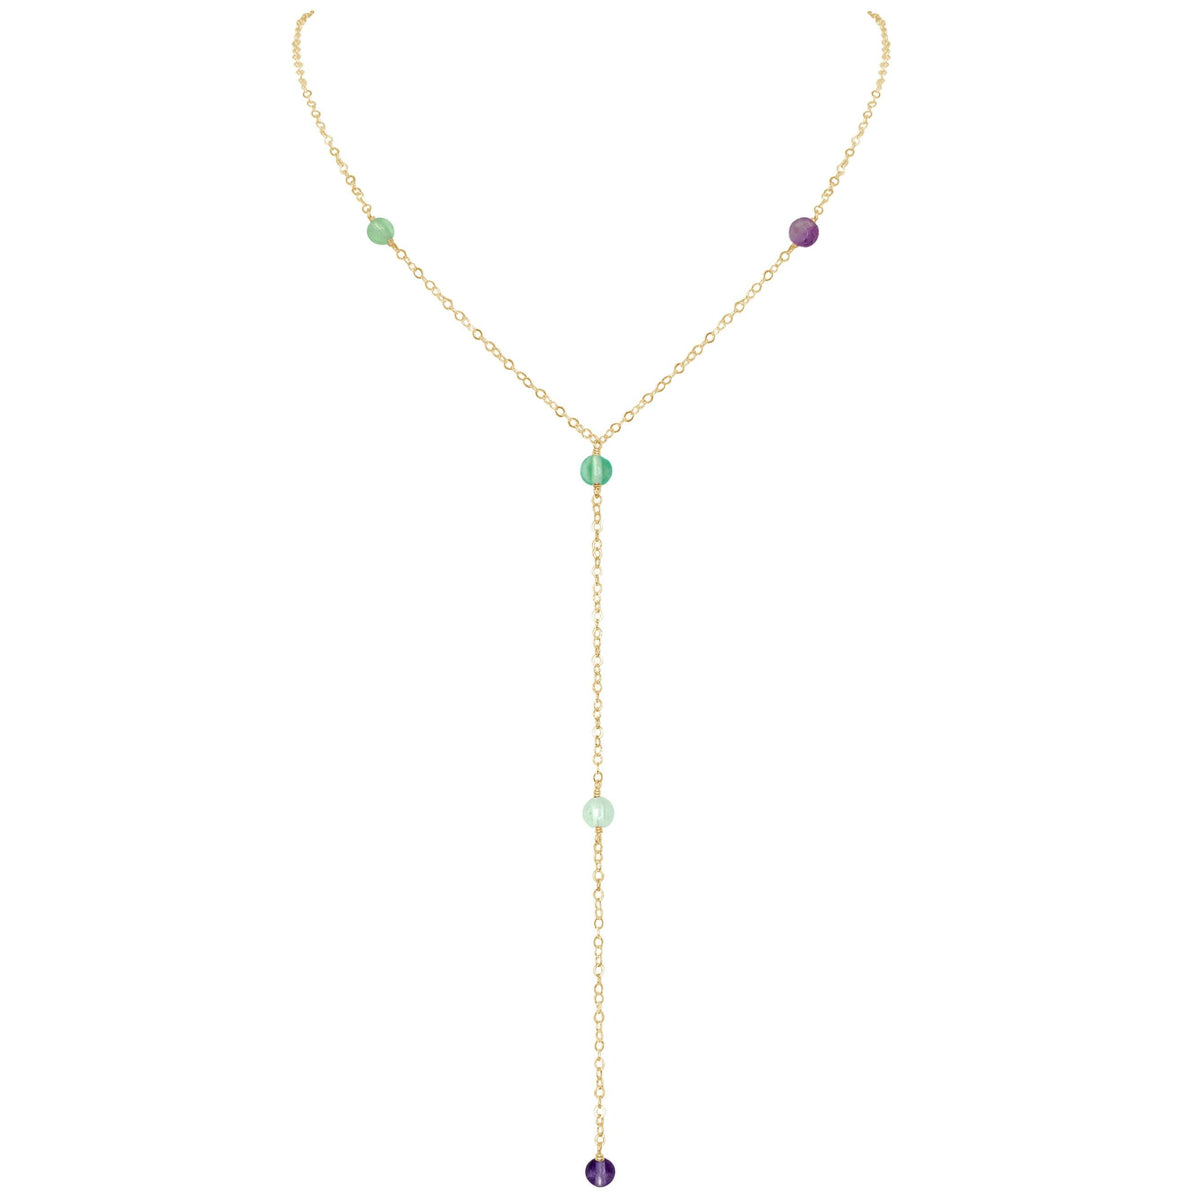 Dainty Y Necklace - Fluorite - 14K Gold Fill - Luna Tide Handmade Jewellery